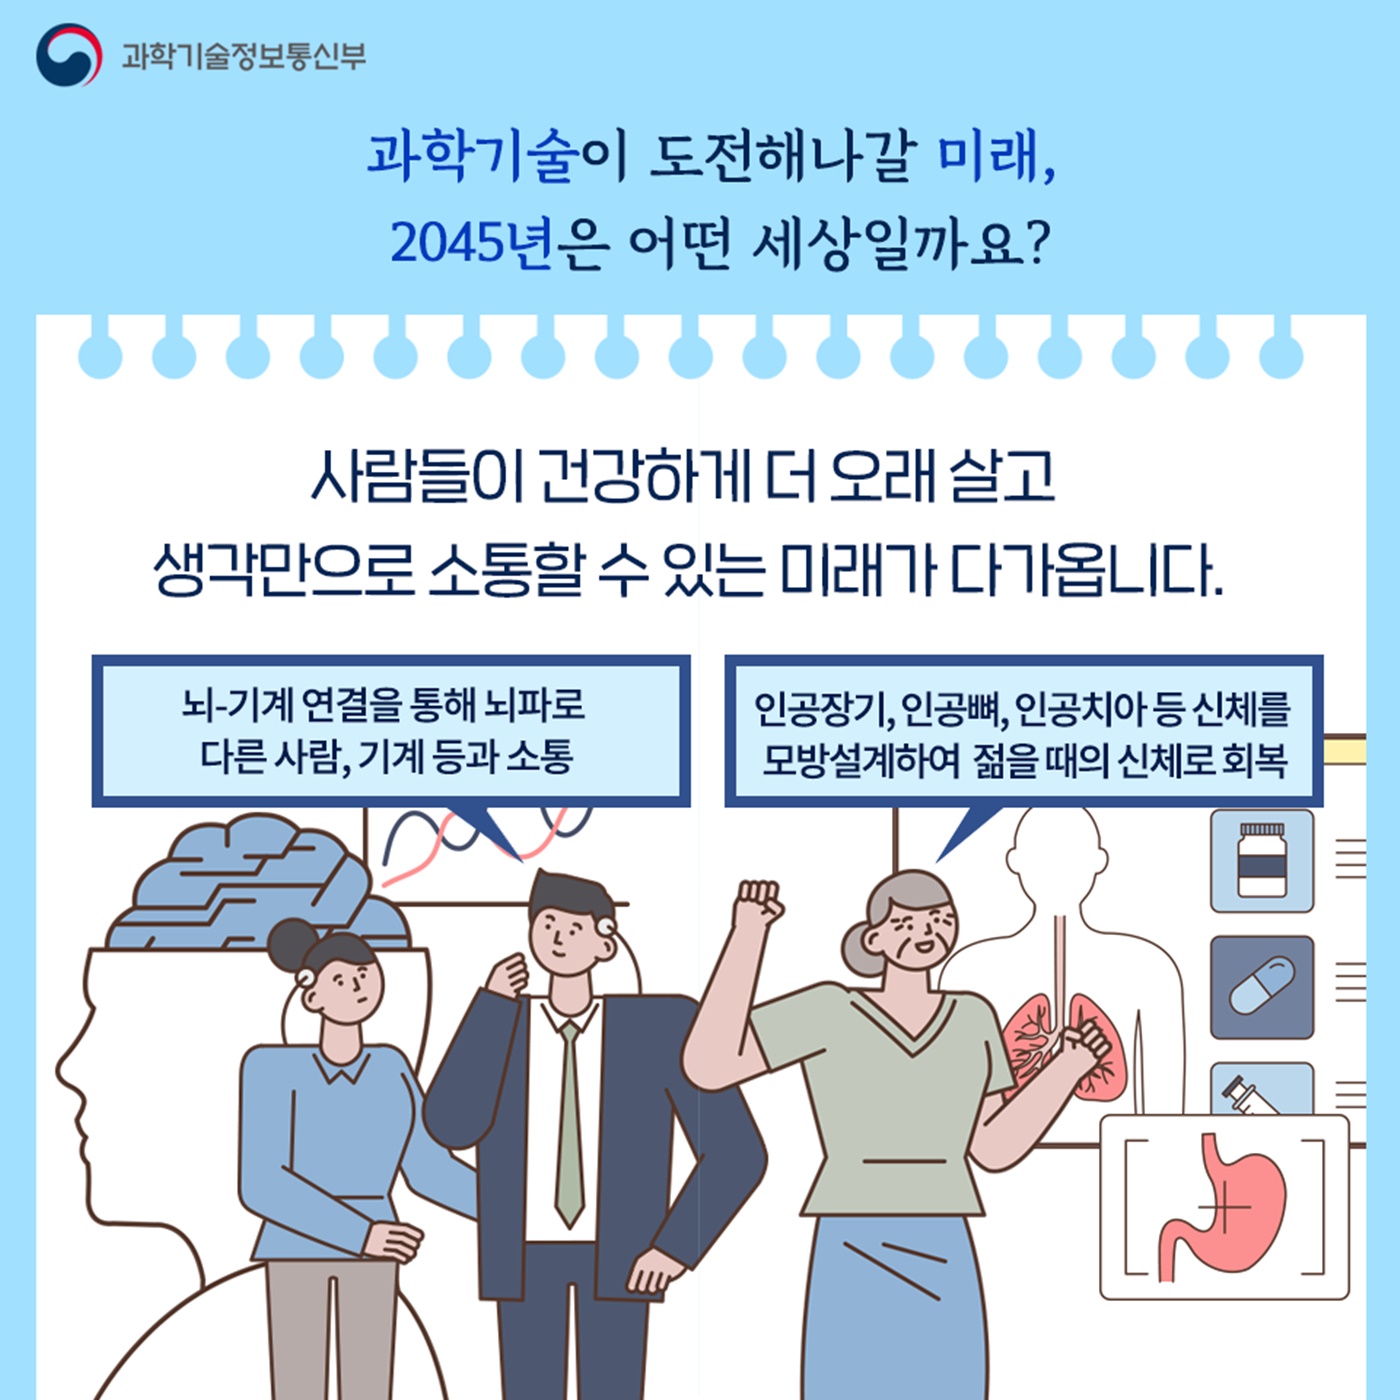 2045 원하는 미래를 그리고 과학기술로 실현하는 대한민국